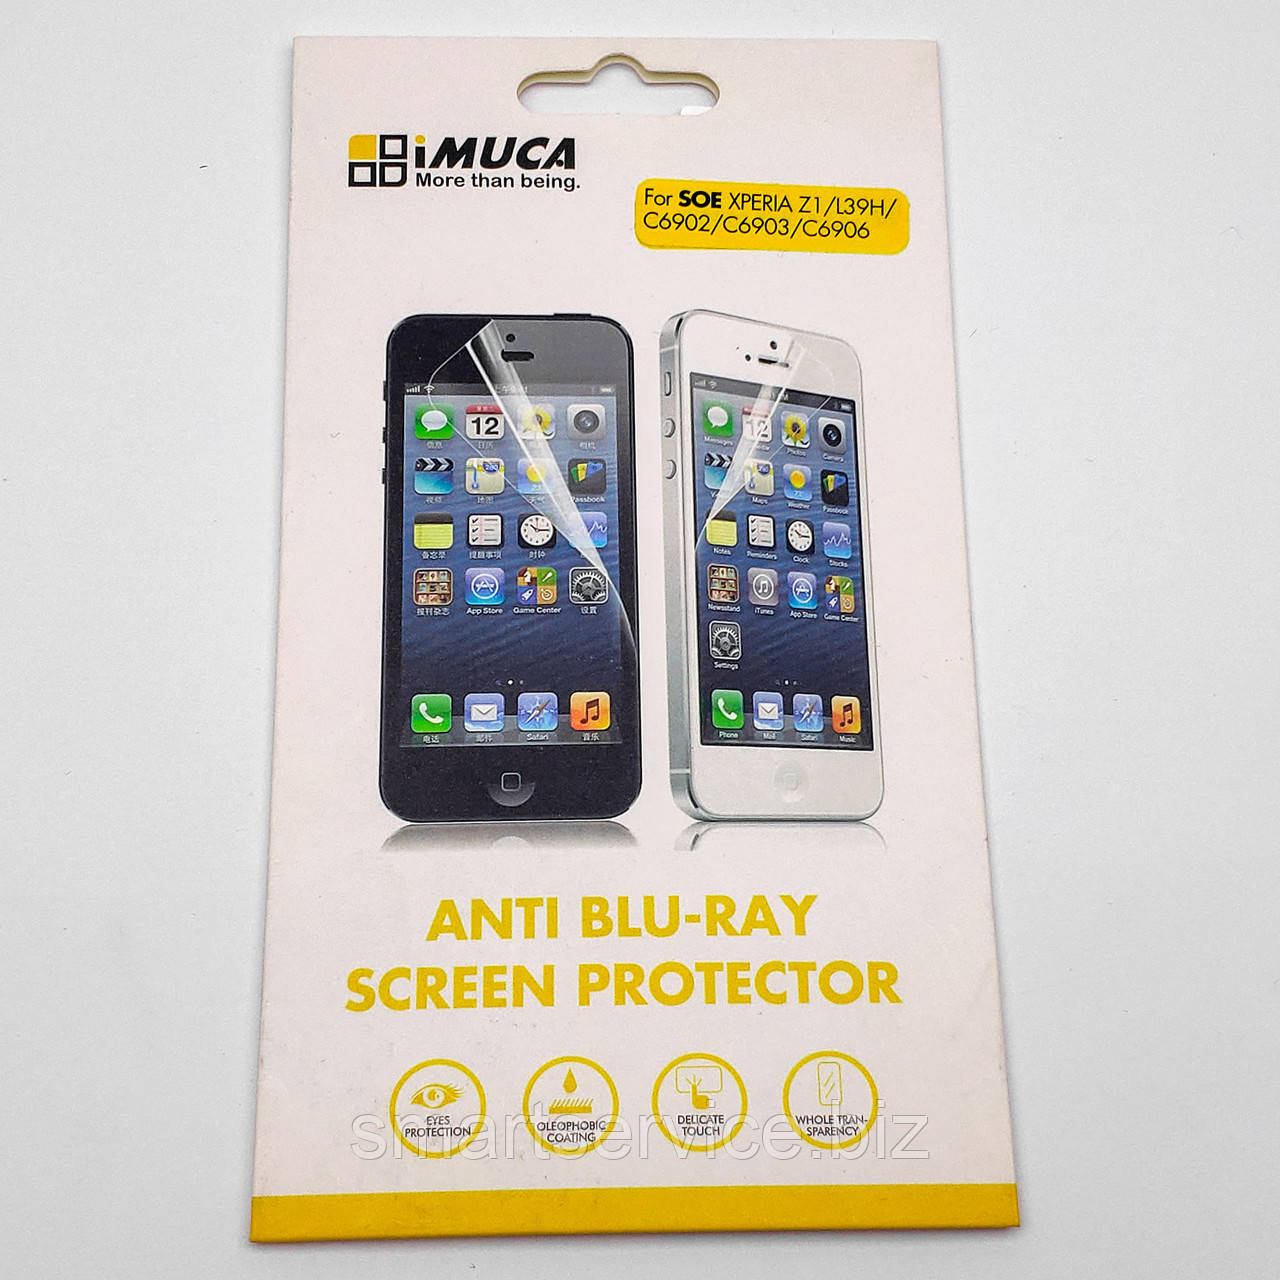 Захисна плівка IMUCA з Anti Blu-ray покриттям для Sony Xperia Z1